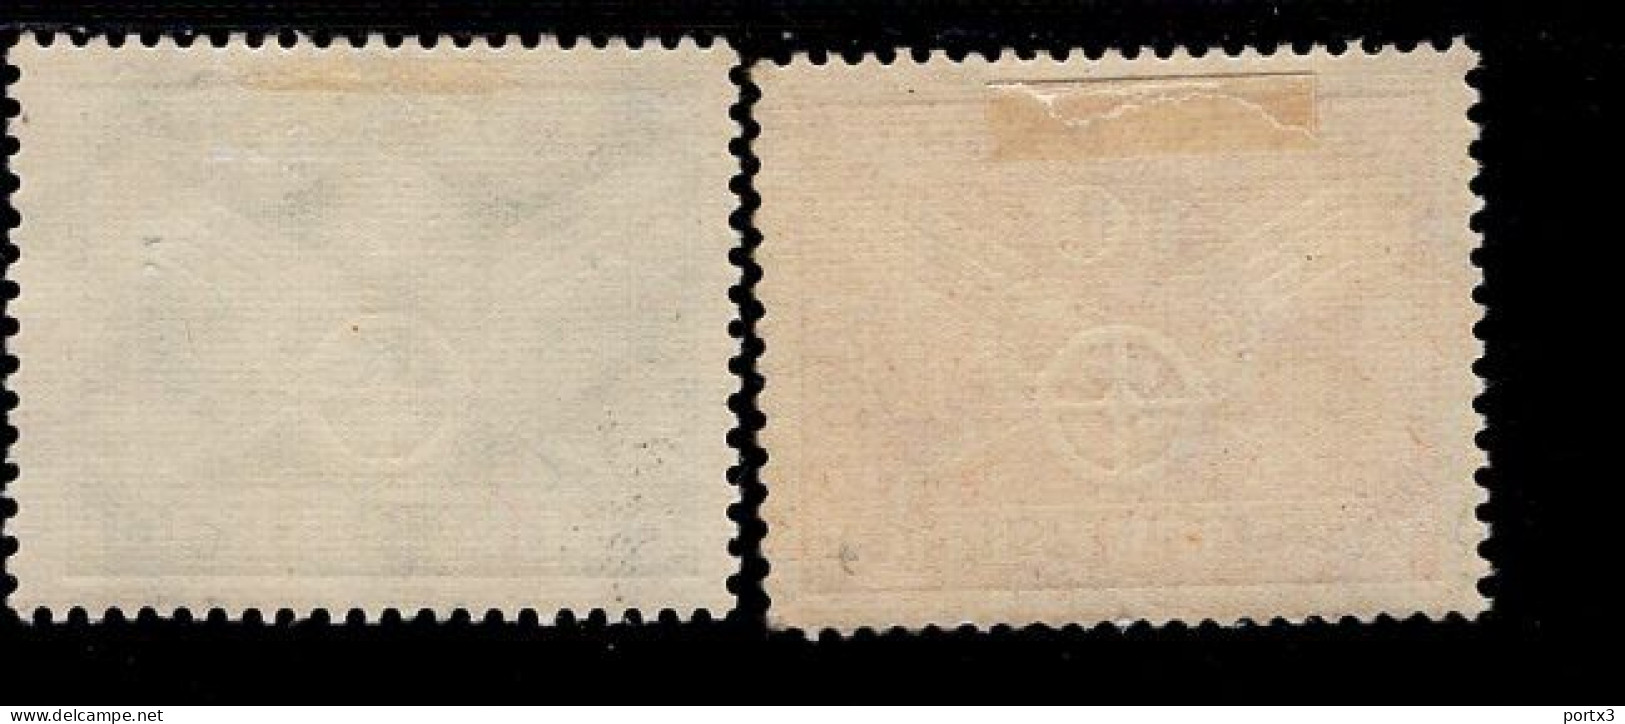 Deutsches Reich 370 - 371 Verkehrsausstellung MLH Mint Falz * - Unused Stamps